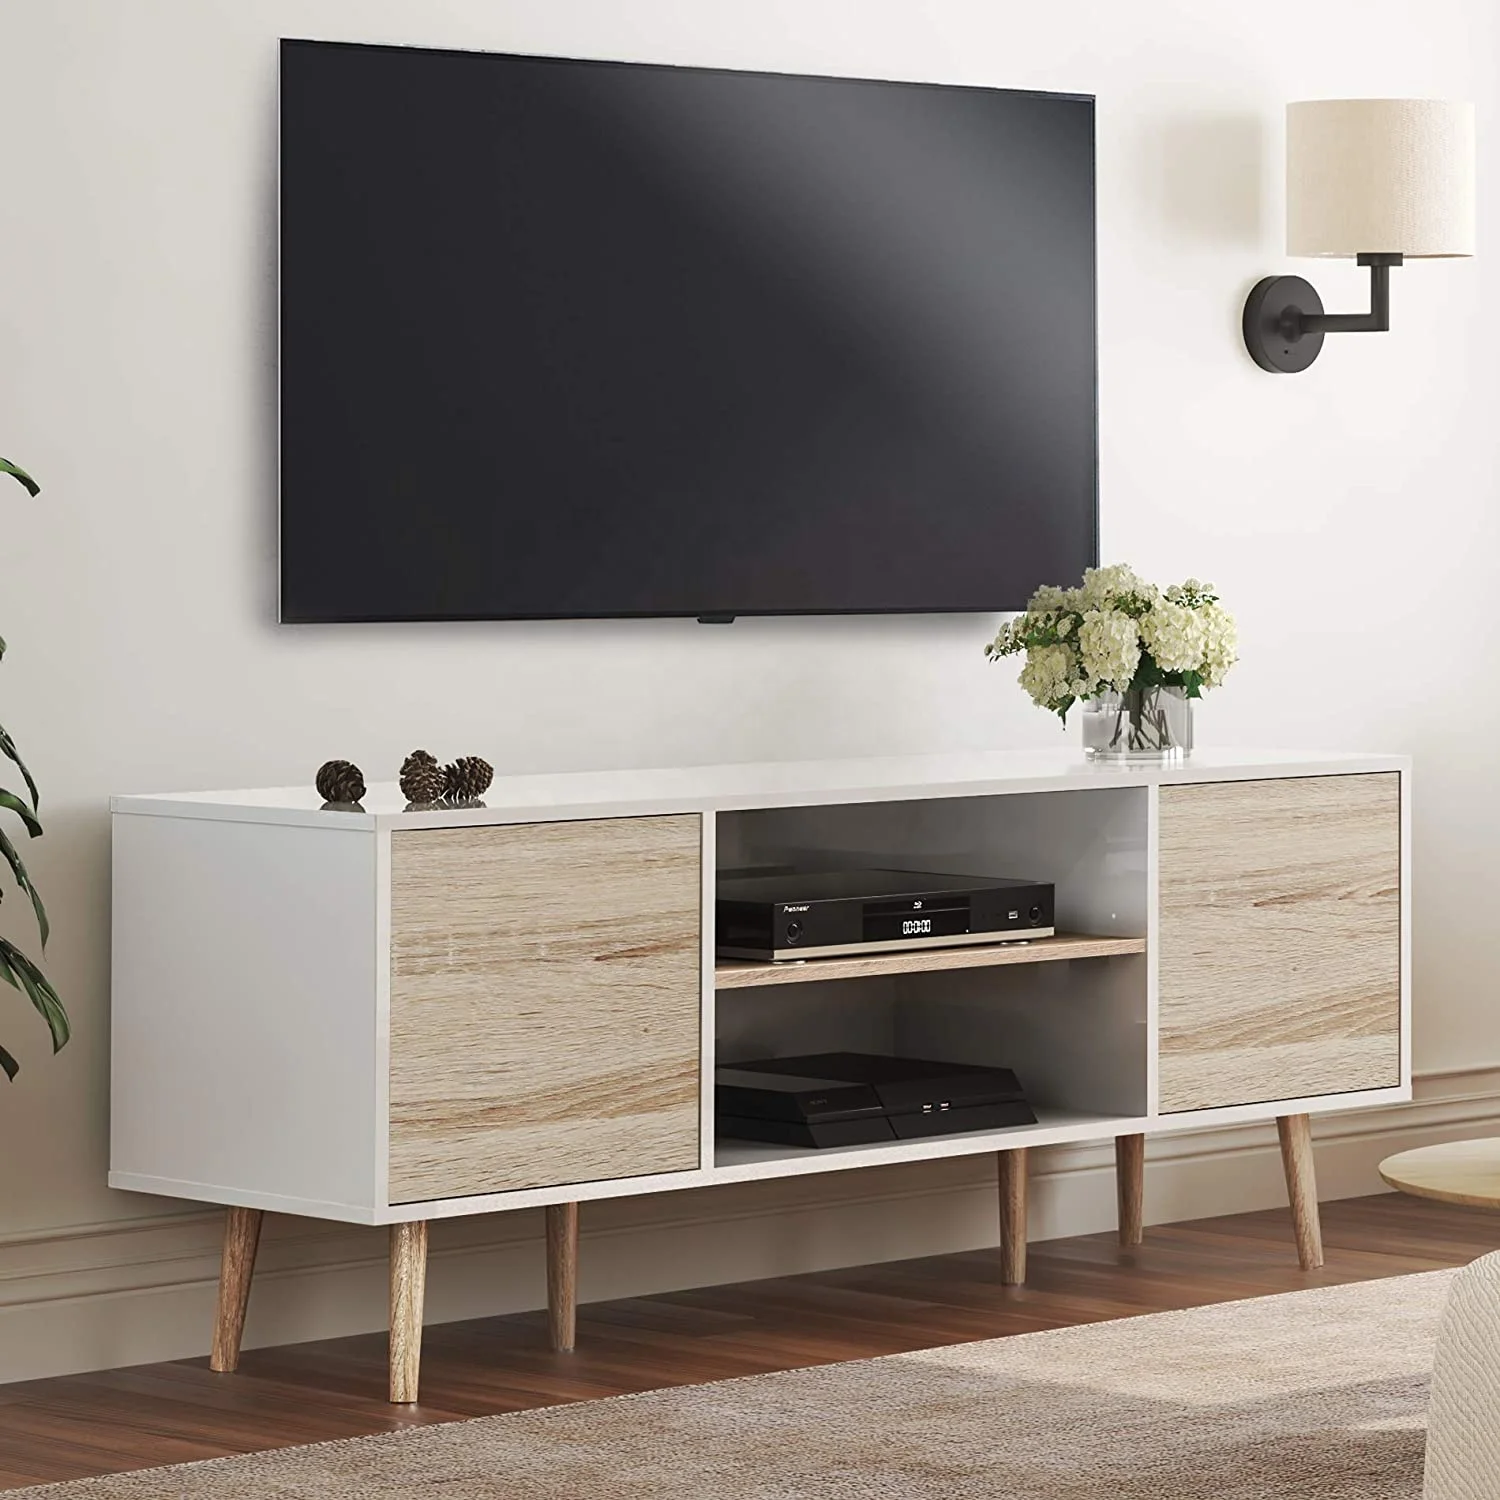 Nova Latest Design Antique Home Living Room Furniture Vintage Industrial Wooden Cabine Modern Tv Stand